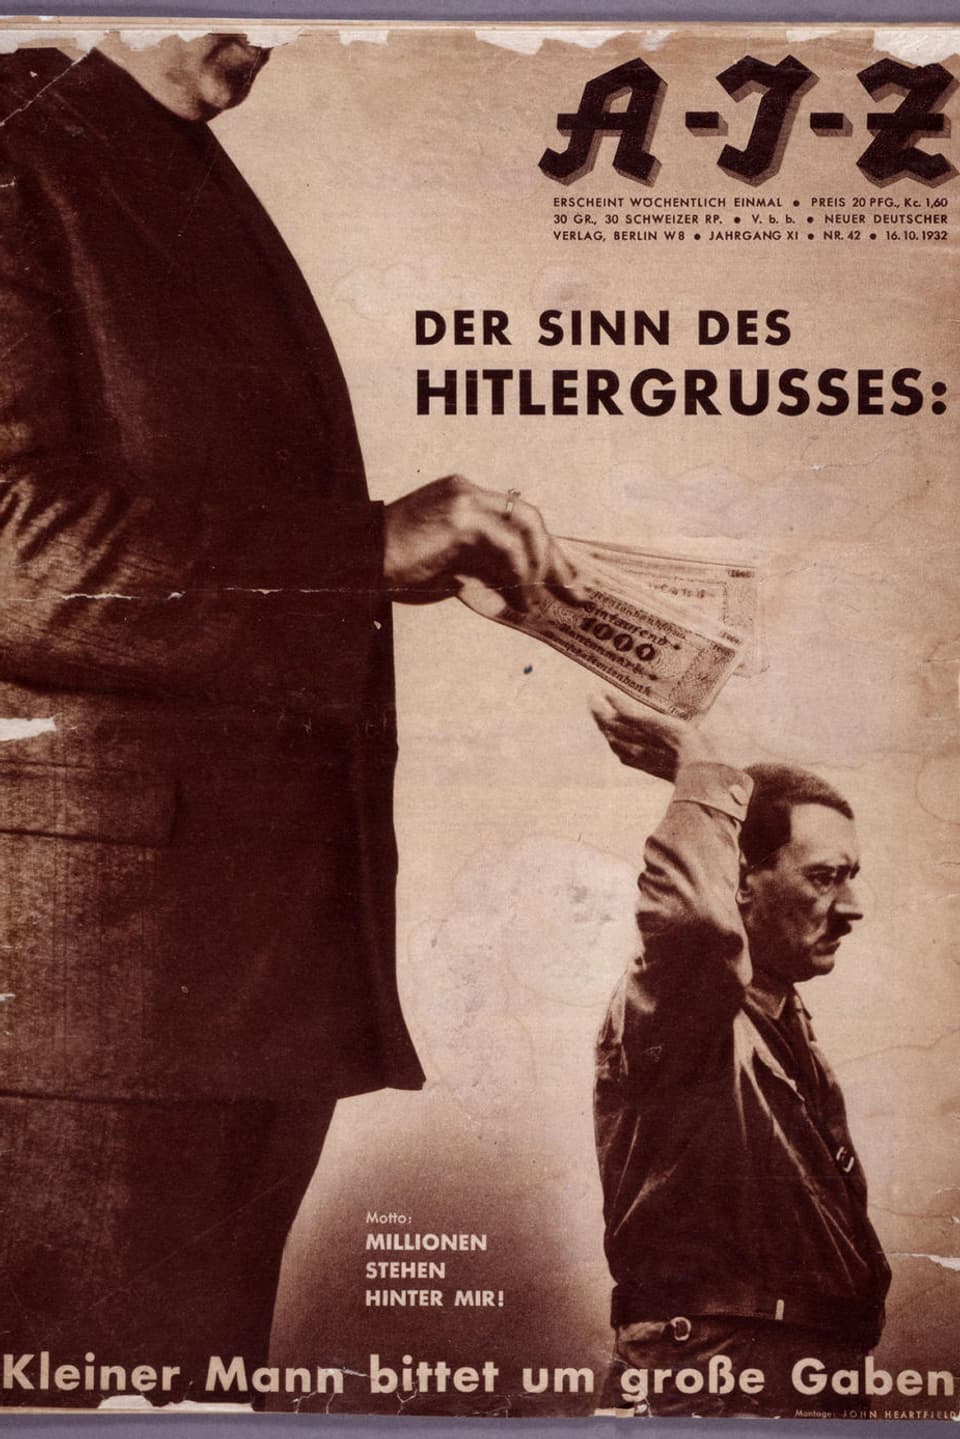 Ein grosser Mann gibt Hitler Geldscheine in seine Hand.